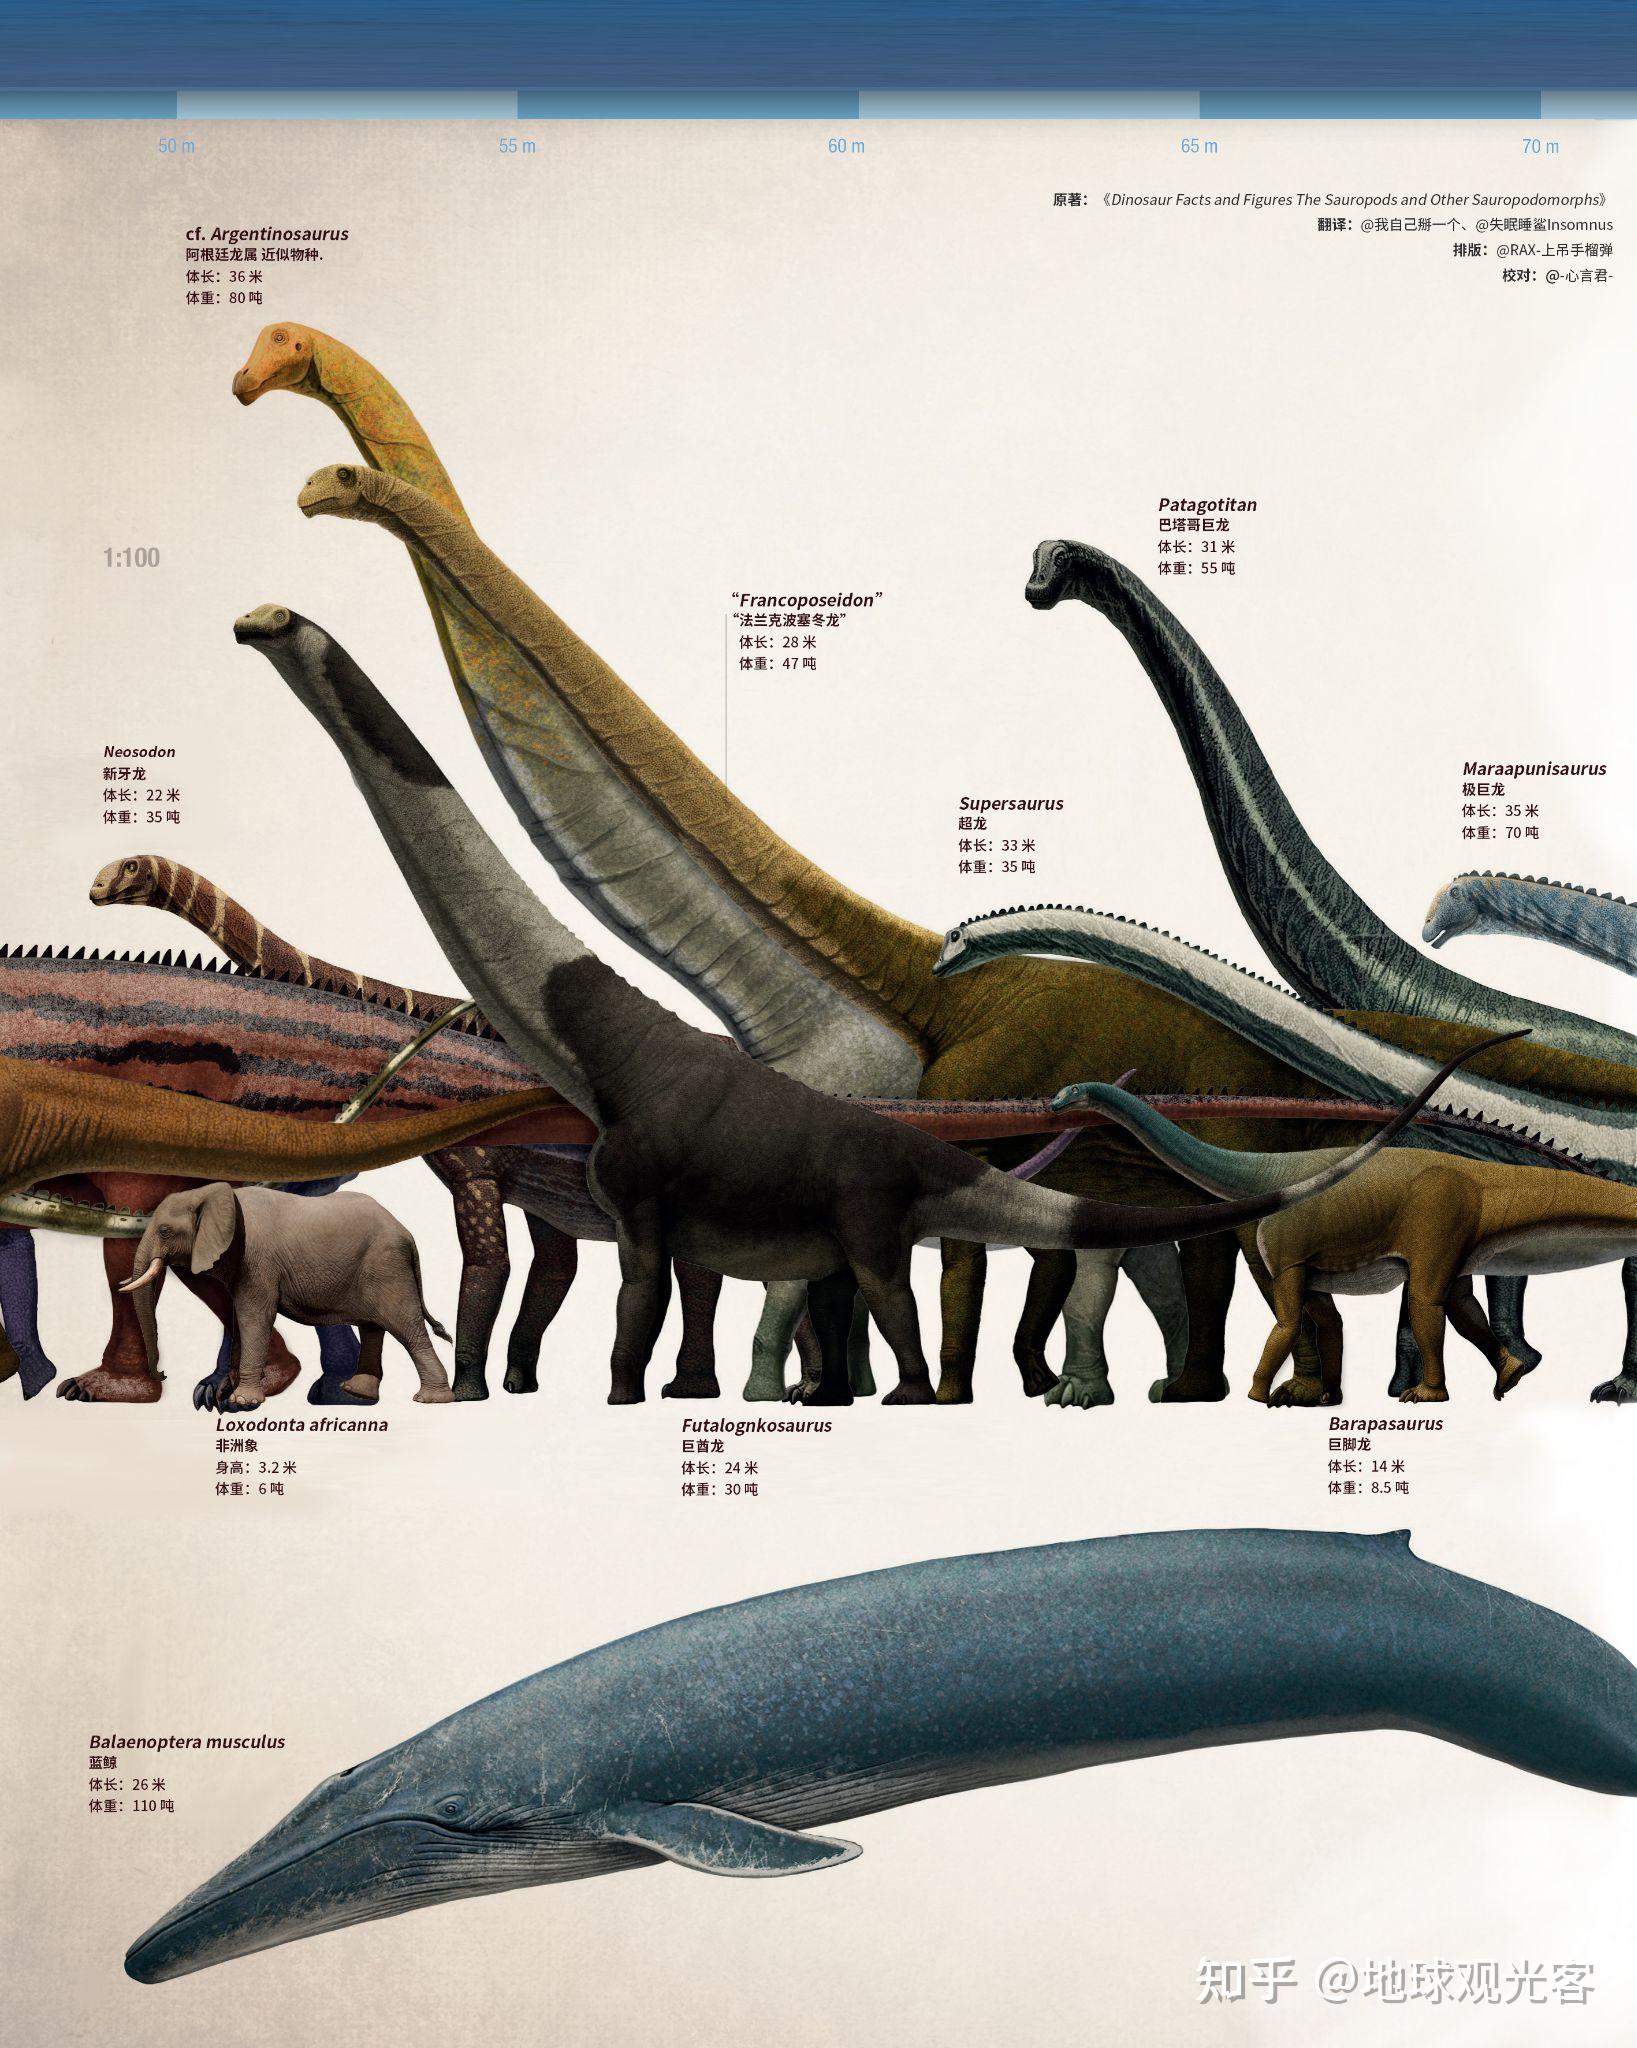 各种恐龙的名称 真实图片